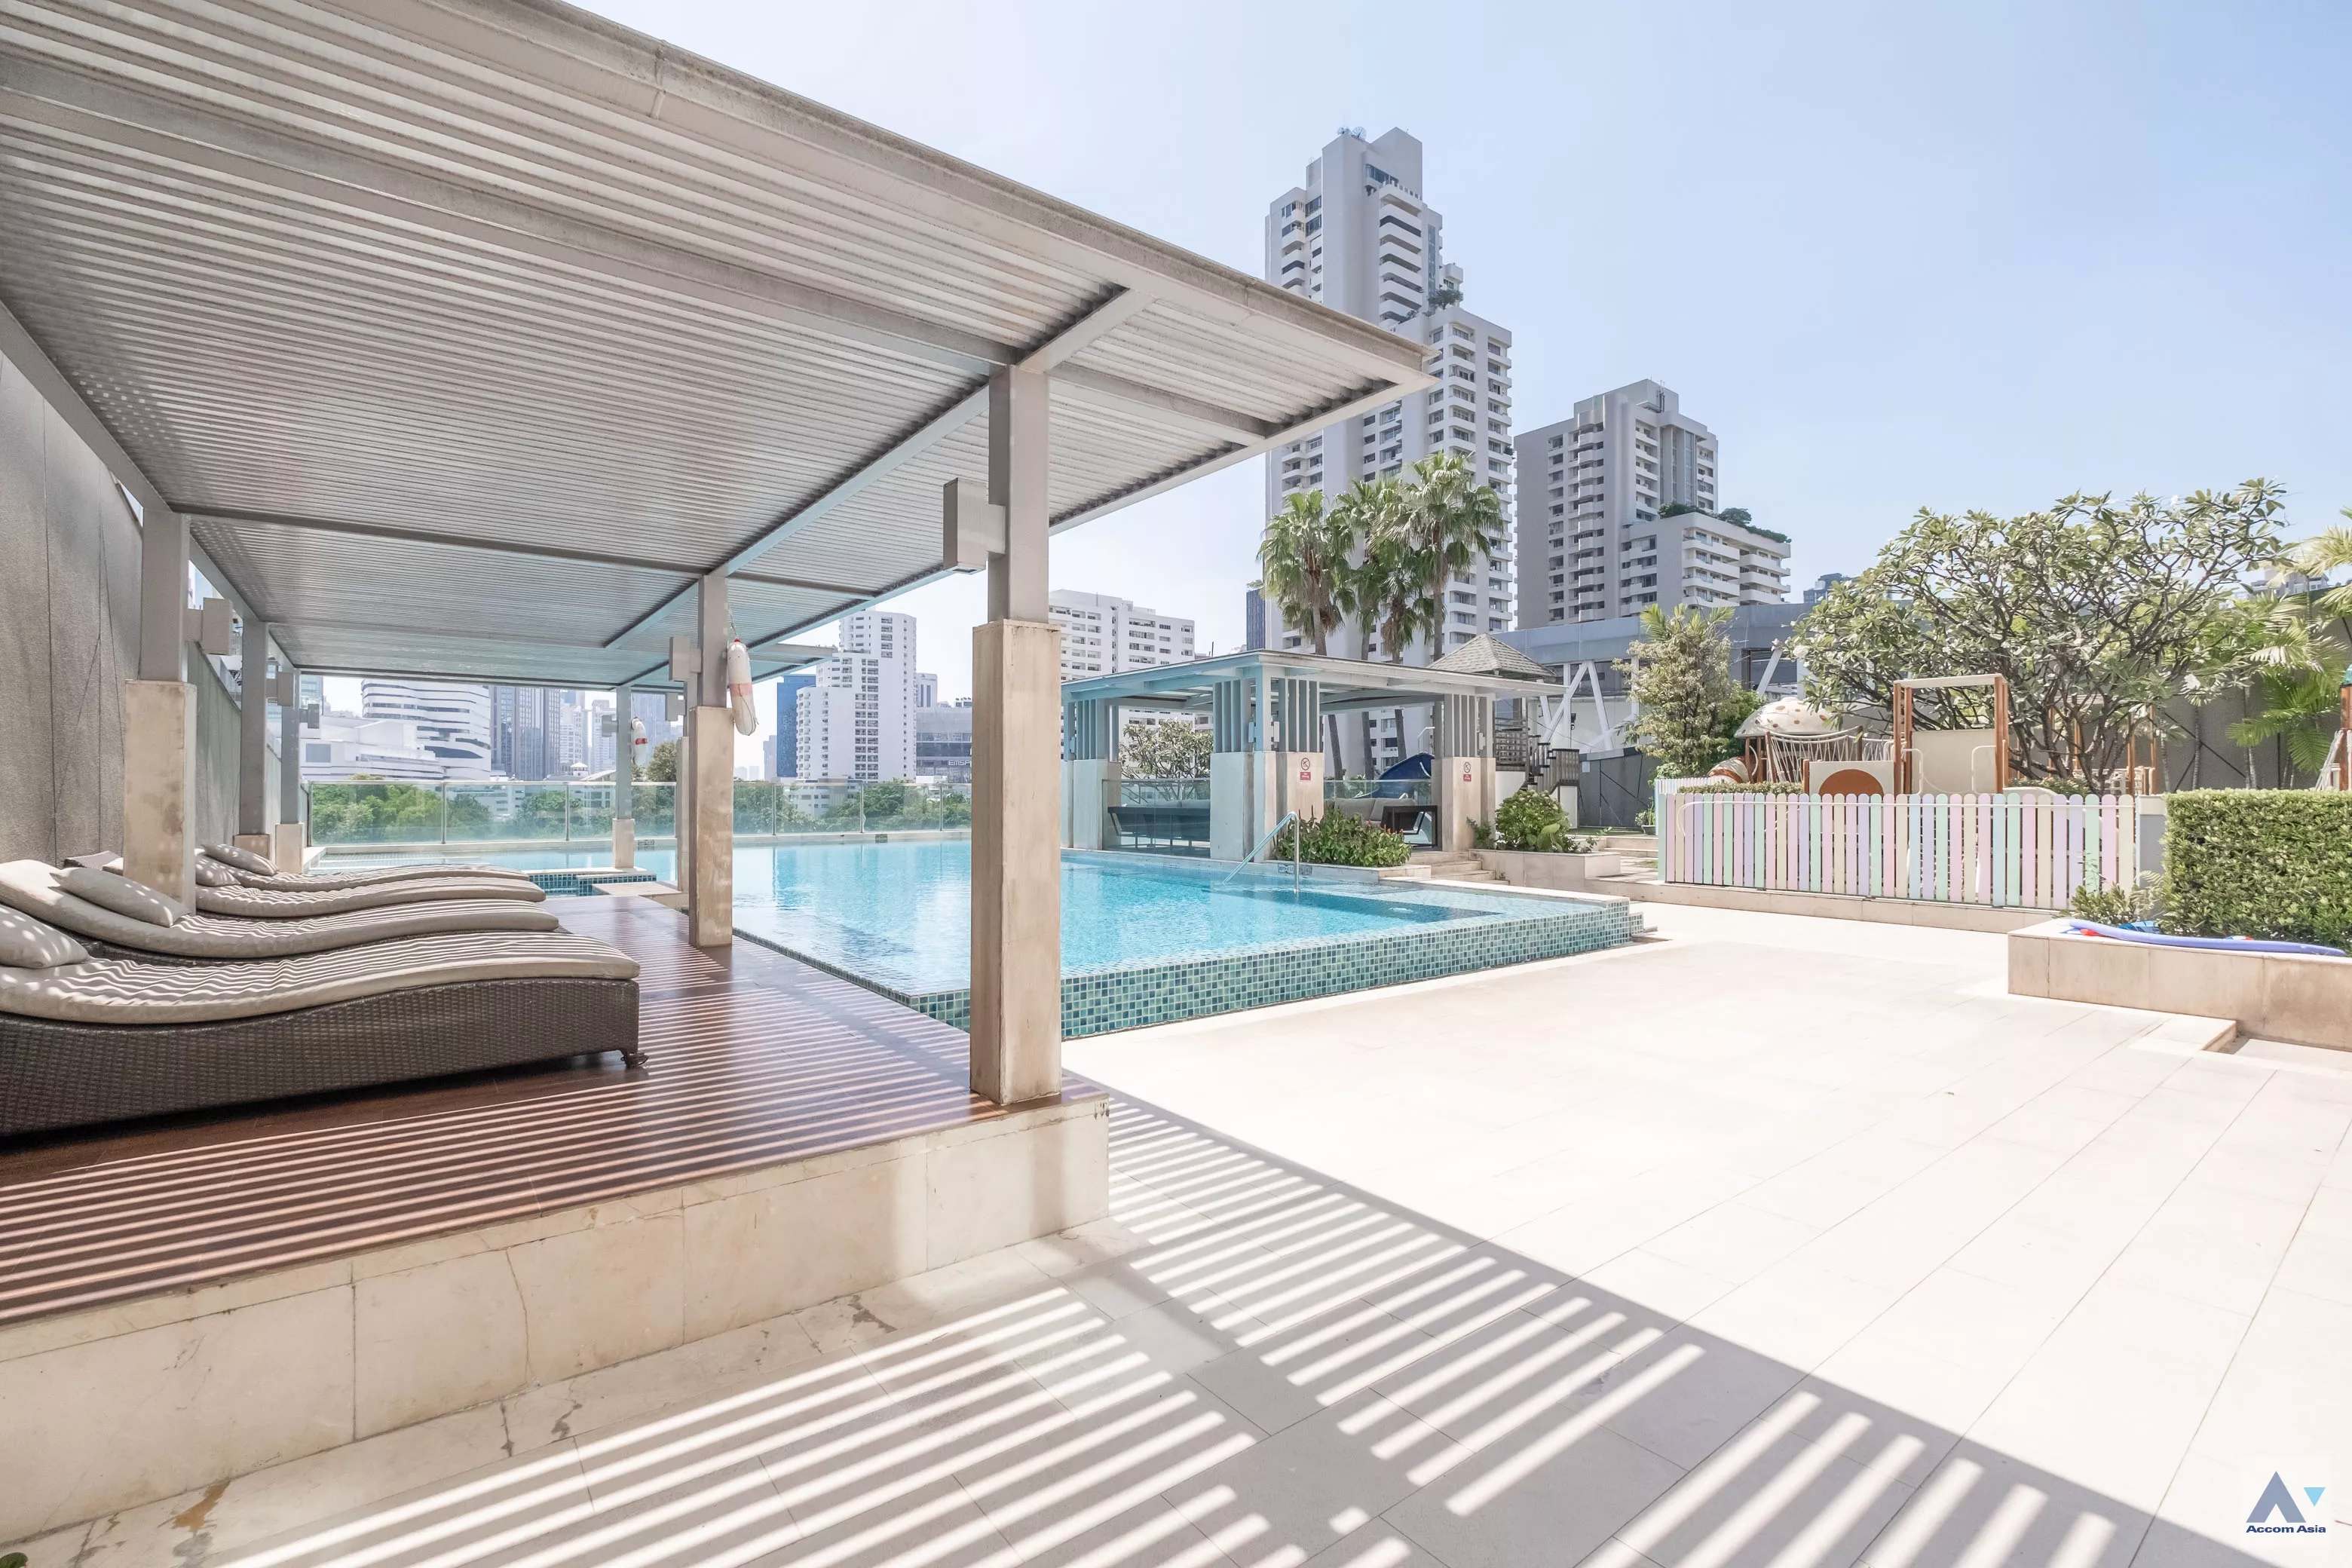  3 The Elegantly Residence - Apartment - Sukhumvit - Bangkok / Accomasia